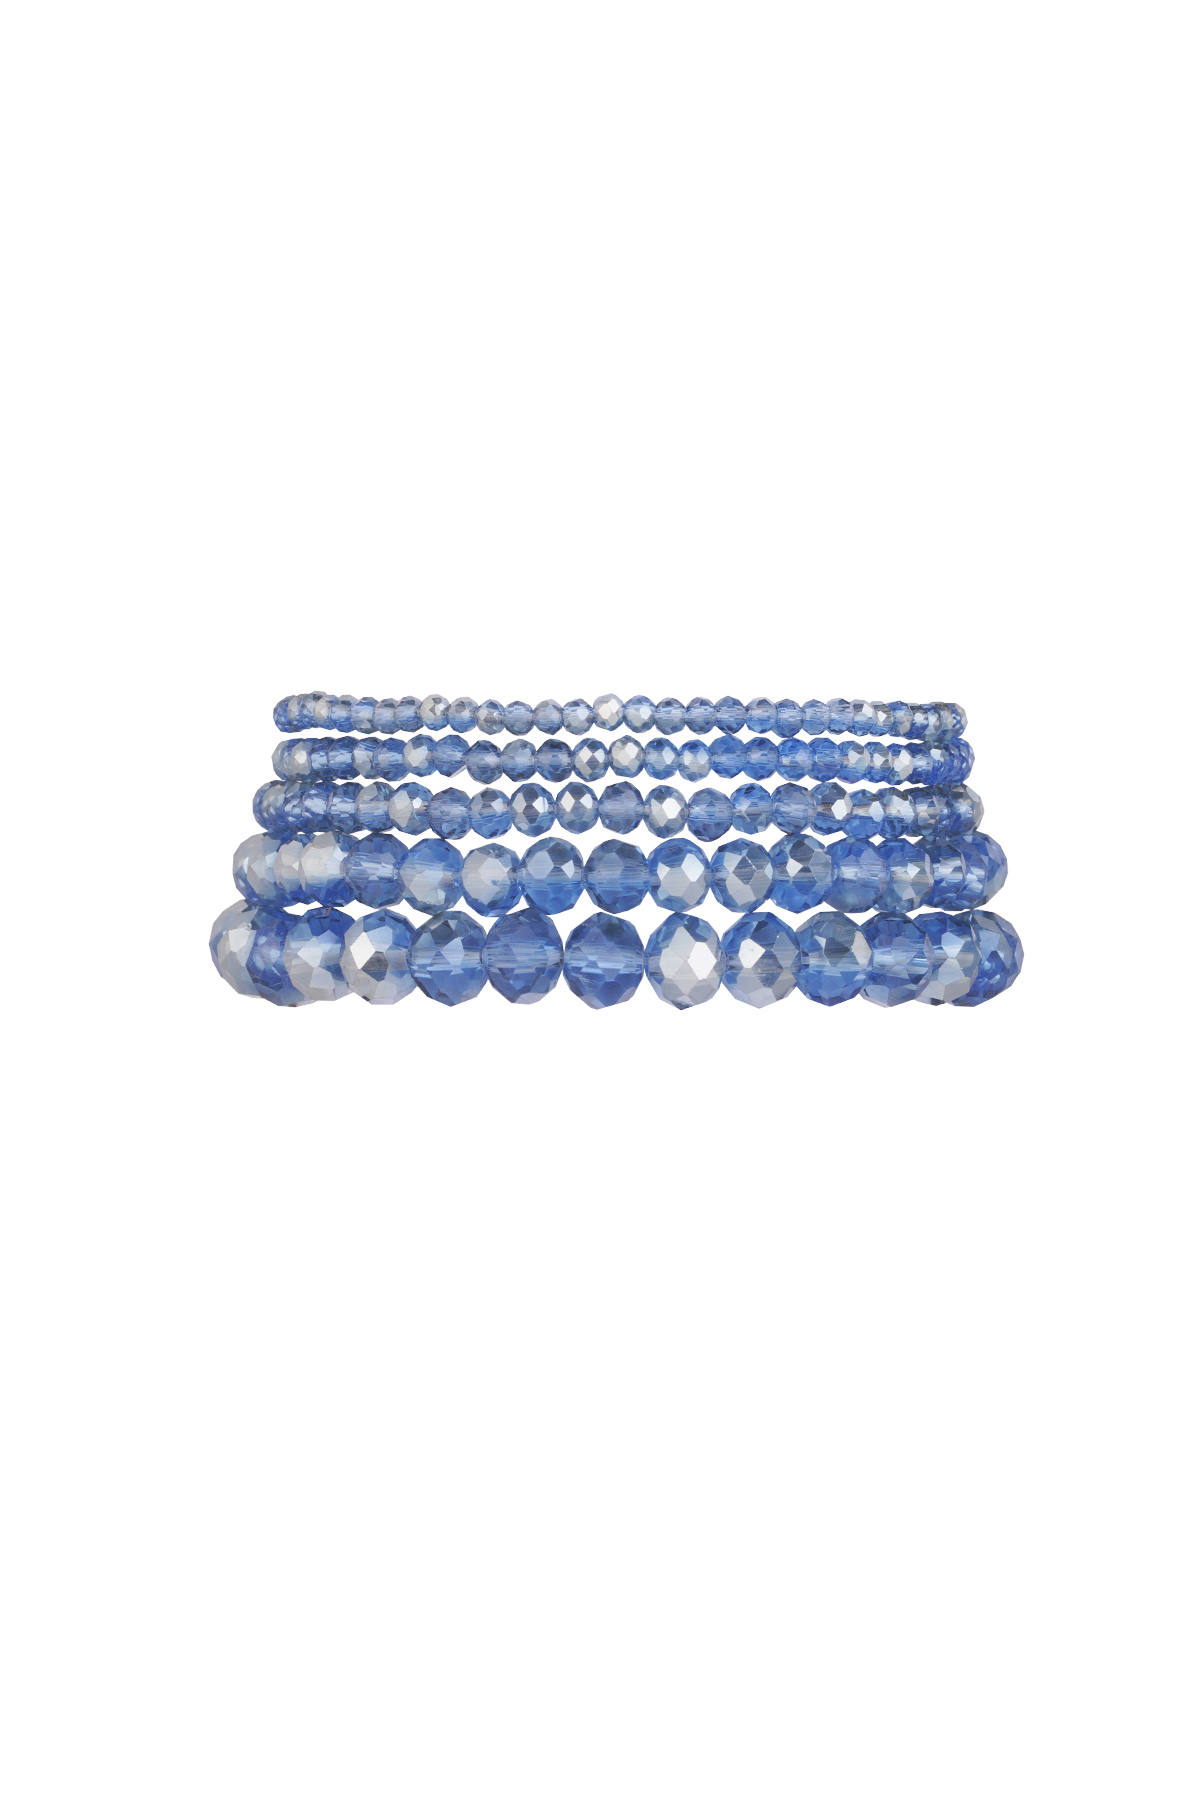 Set van 5 kristal armbanden oceaan - blauw goud